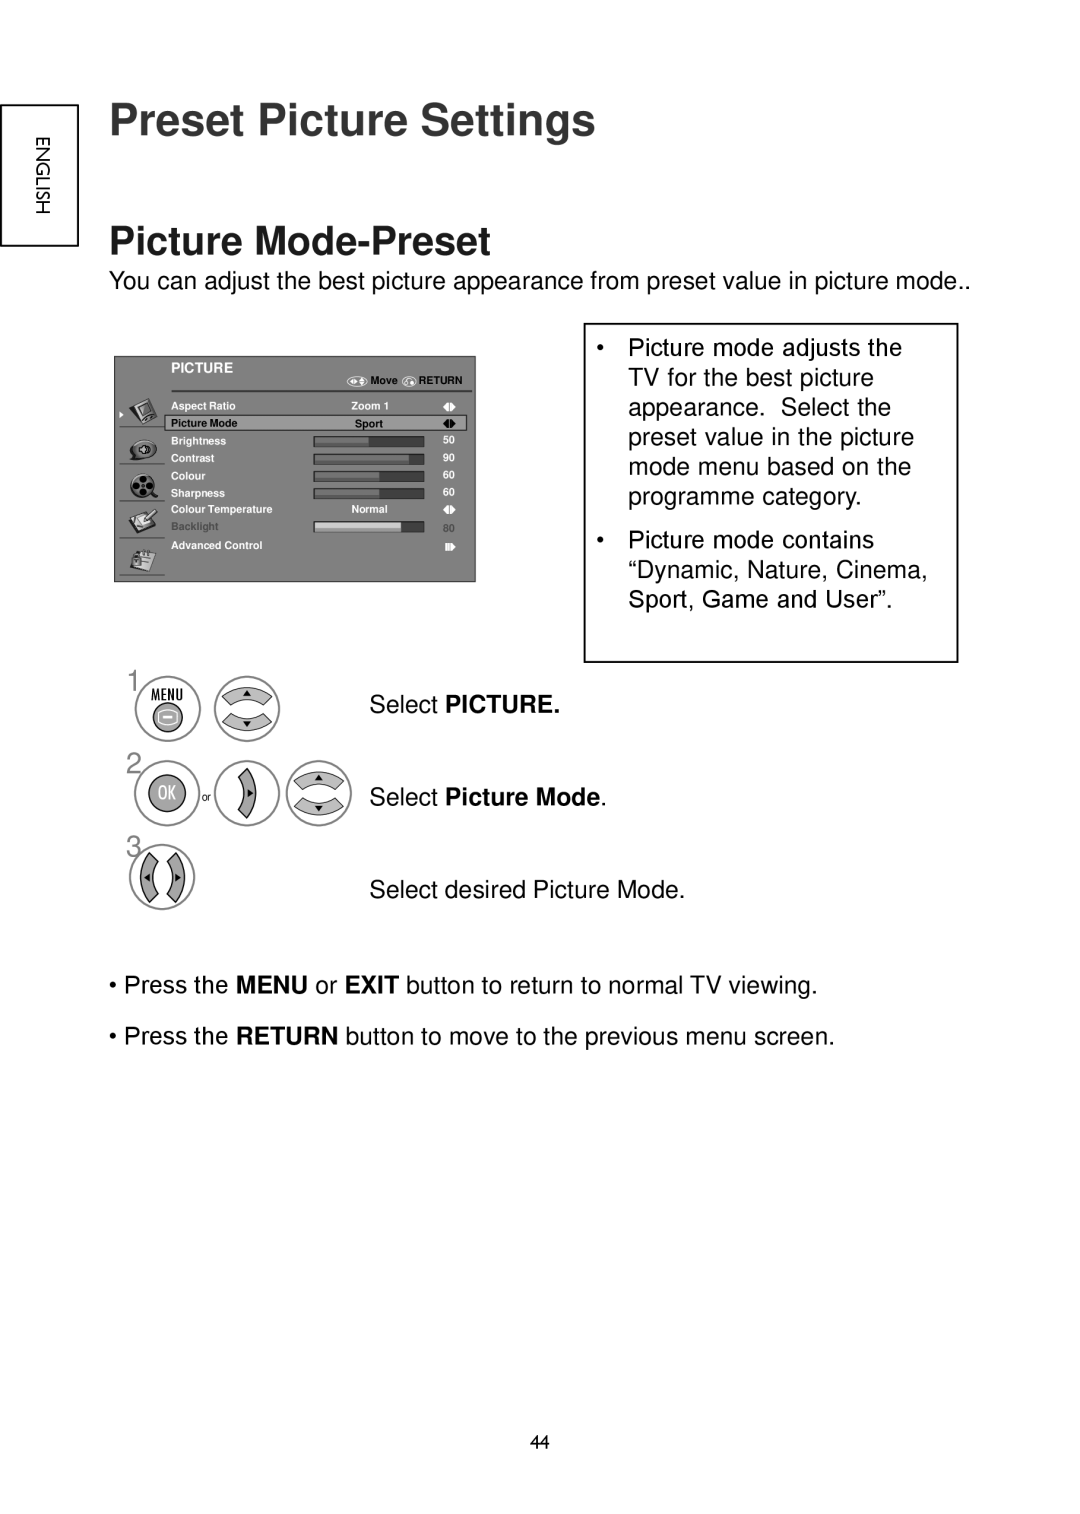 Hitachi 32LD4550C, 32LD4550U Preset Picture Settings, Picture Mode-Preset, Select PICTURE, OK or Select Picture Mode 